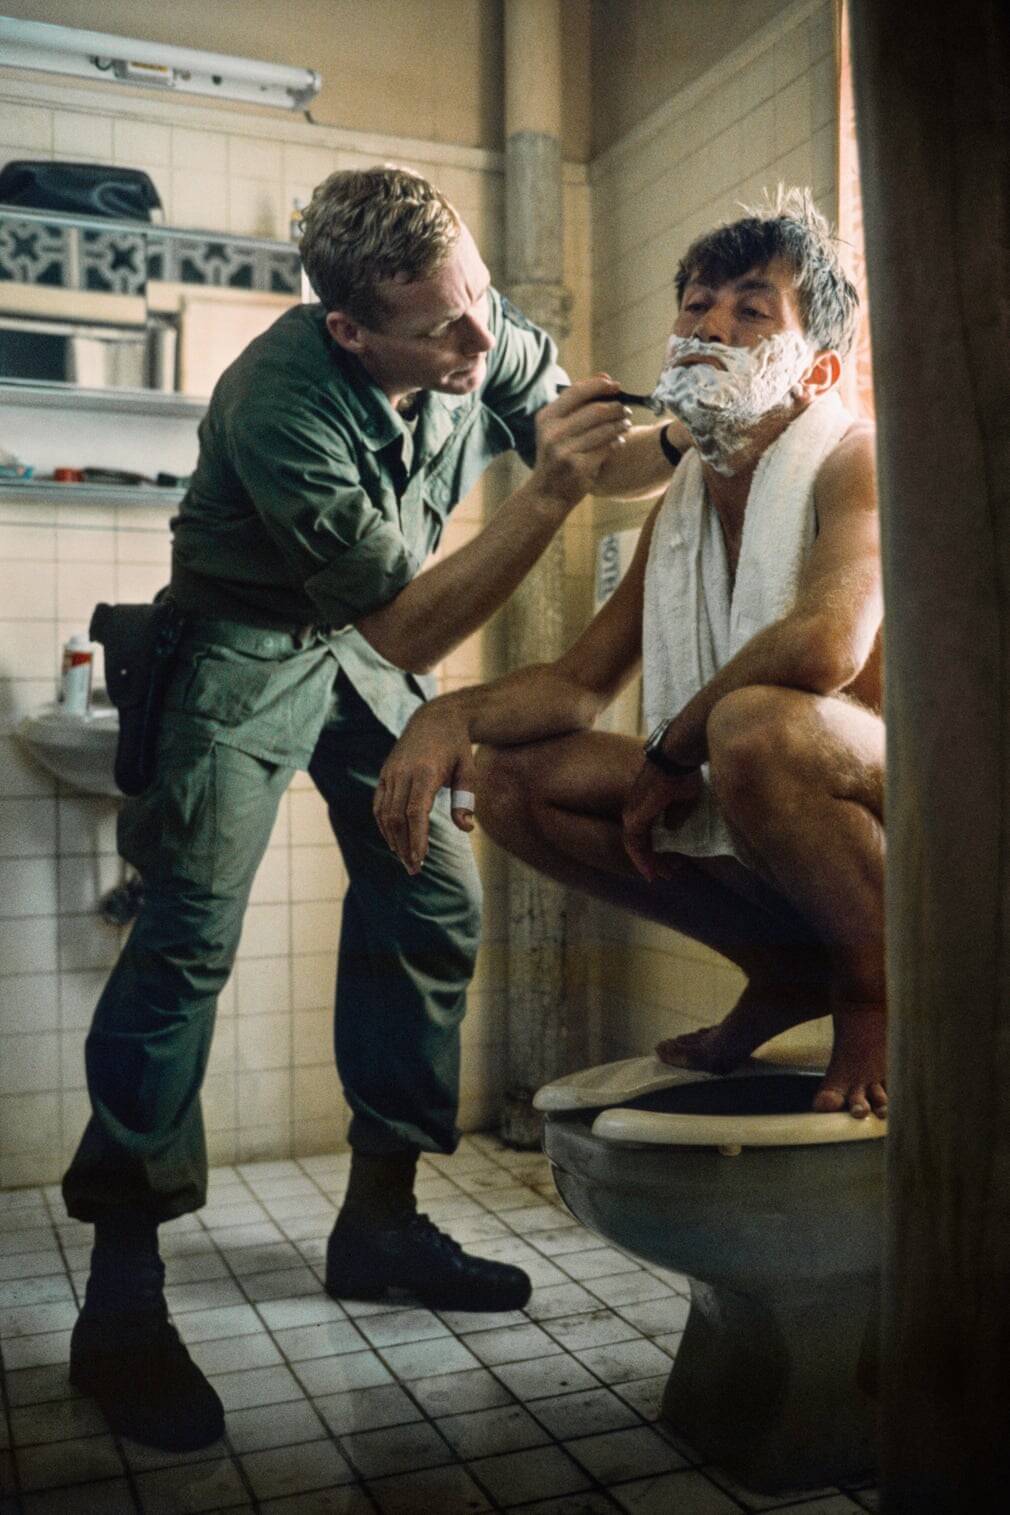 Мартина Шина бреют перед съёмкой. Актер, которому тогда было 36 лет, перенес нервный срыв и сердечный приступ во время съемок. Фотограф Час Герретсен